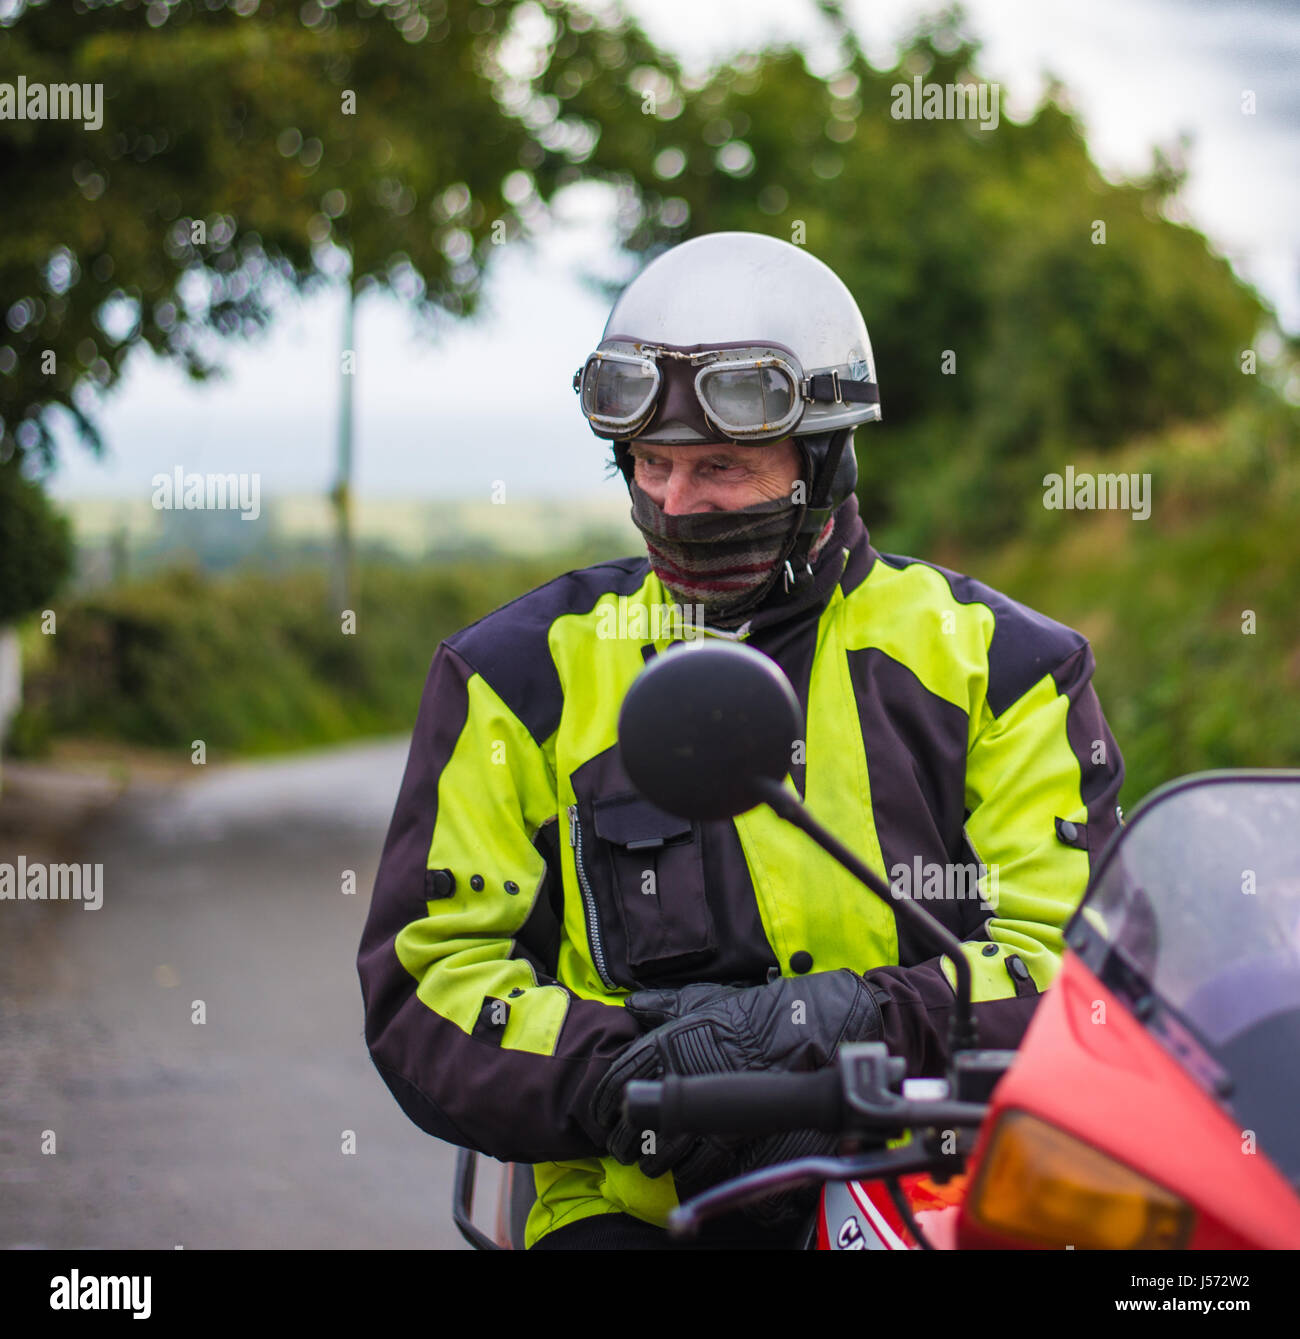 Old motorbiker wearing biking gear on his bike Stock Photo